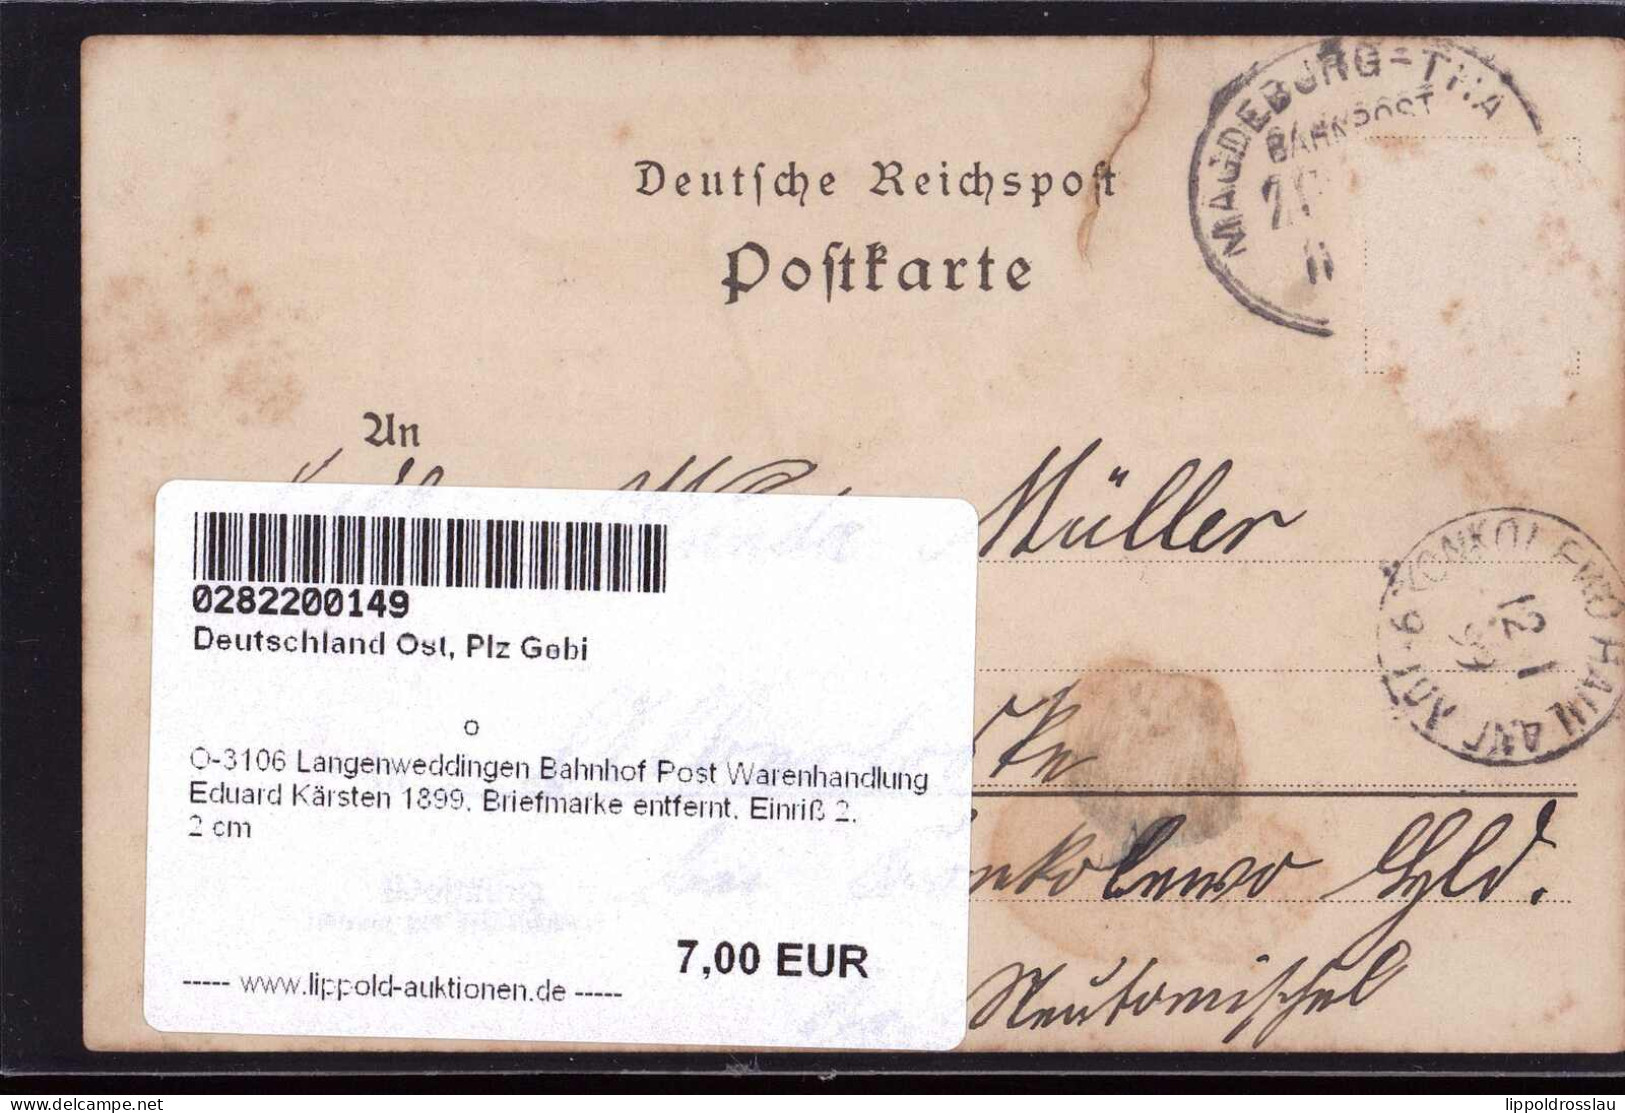 Gest. O-3106 Langenweddingen Bahnhof Post Warenhandlung Eduard Kärsten 1899, Briefmarke Entfernt, Einriß 2,2 Cm - Magdeburg